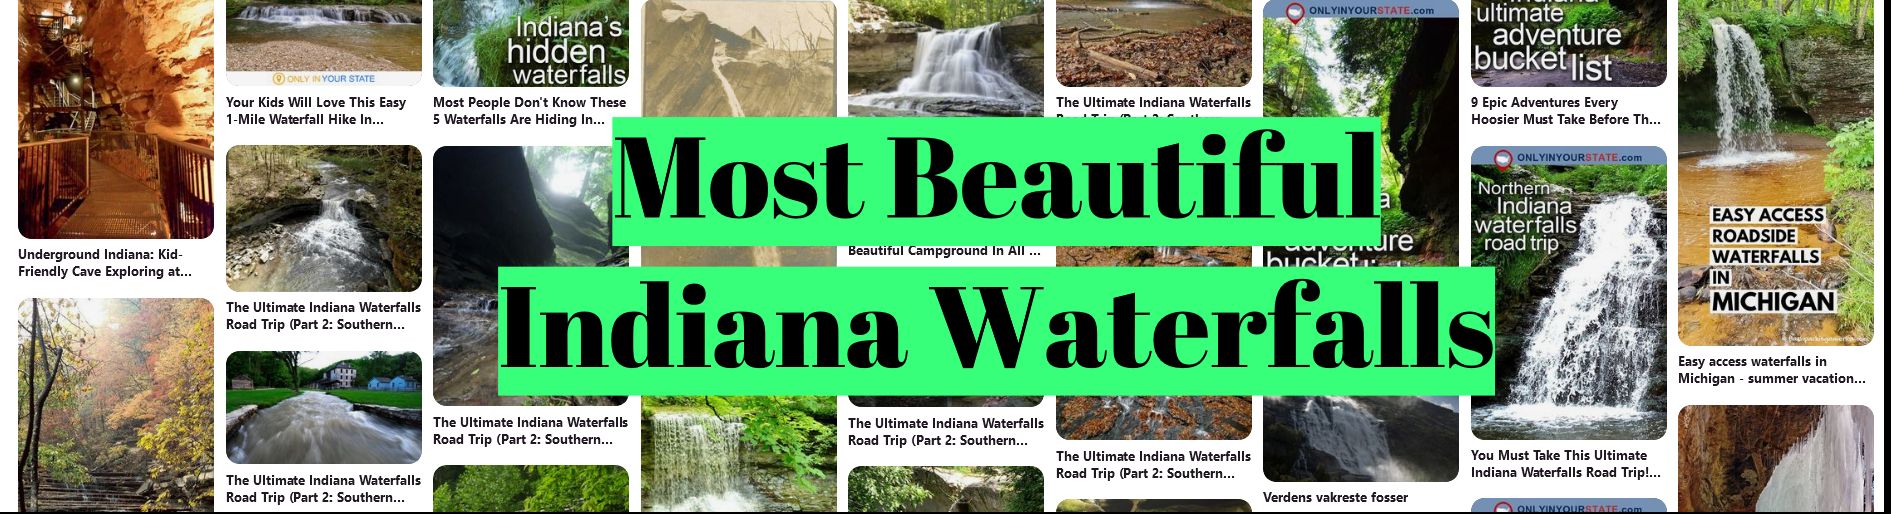 Most Beautiful Indiana Waterfalls